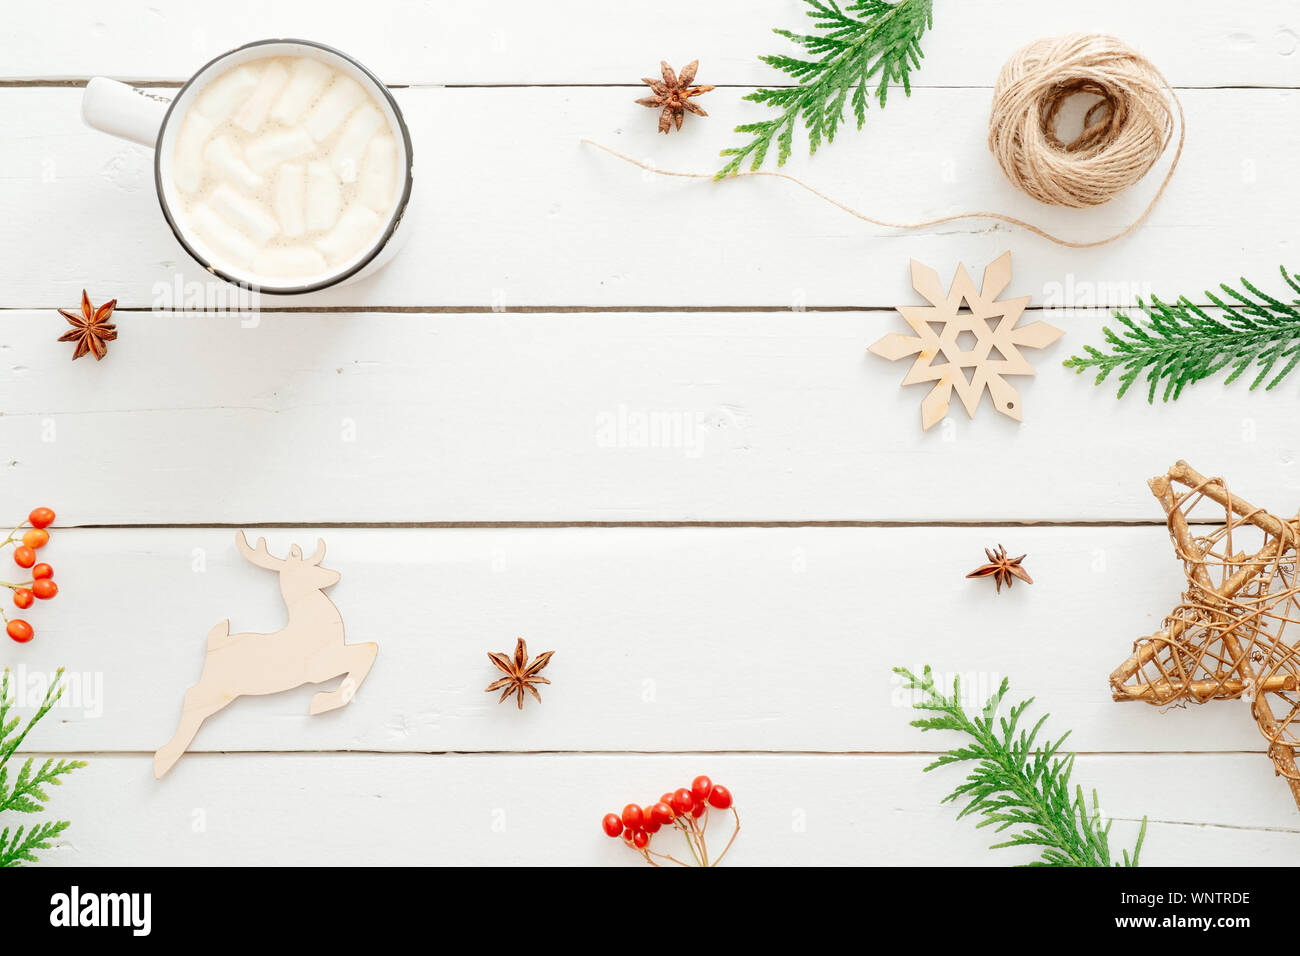 Composizione di natale. Cornice in abete rami, decorazioni di Natale, tazza di cioccolata calda con marshmallow, bacca rossa di legno su sfondo bianco. Foto Stock